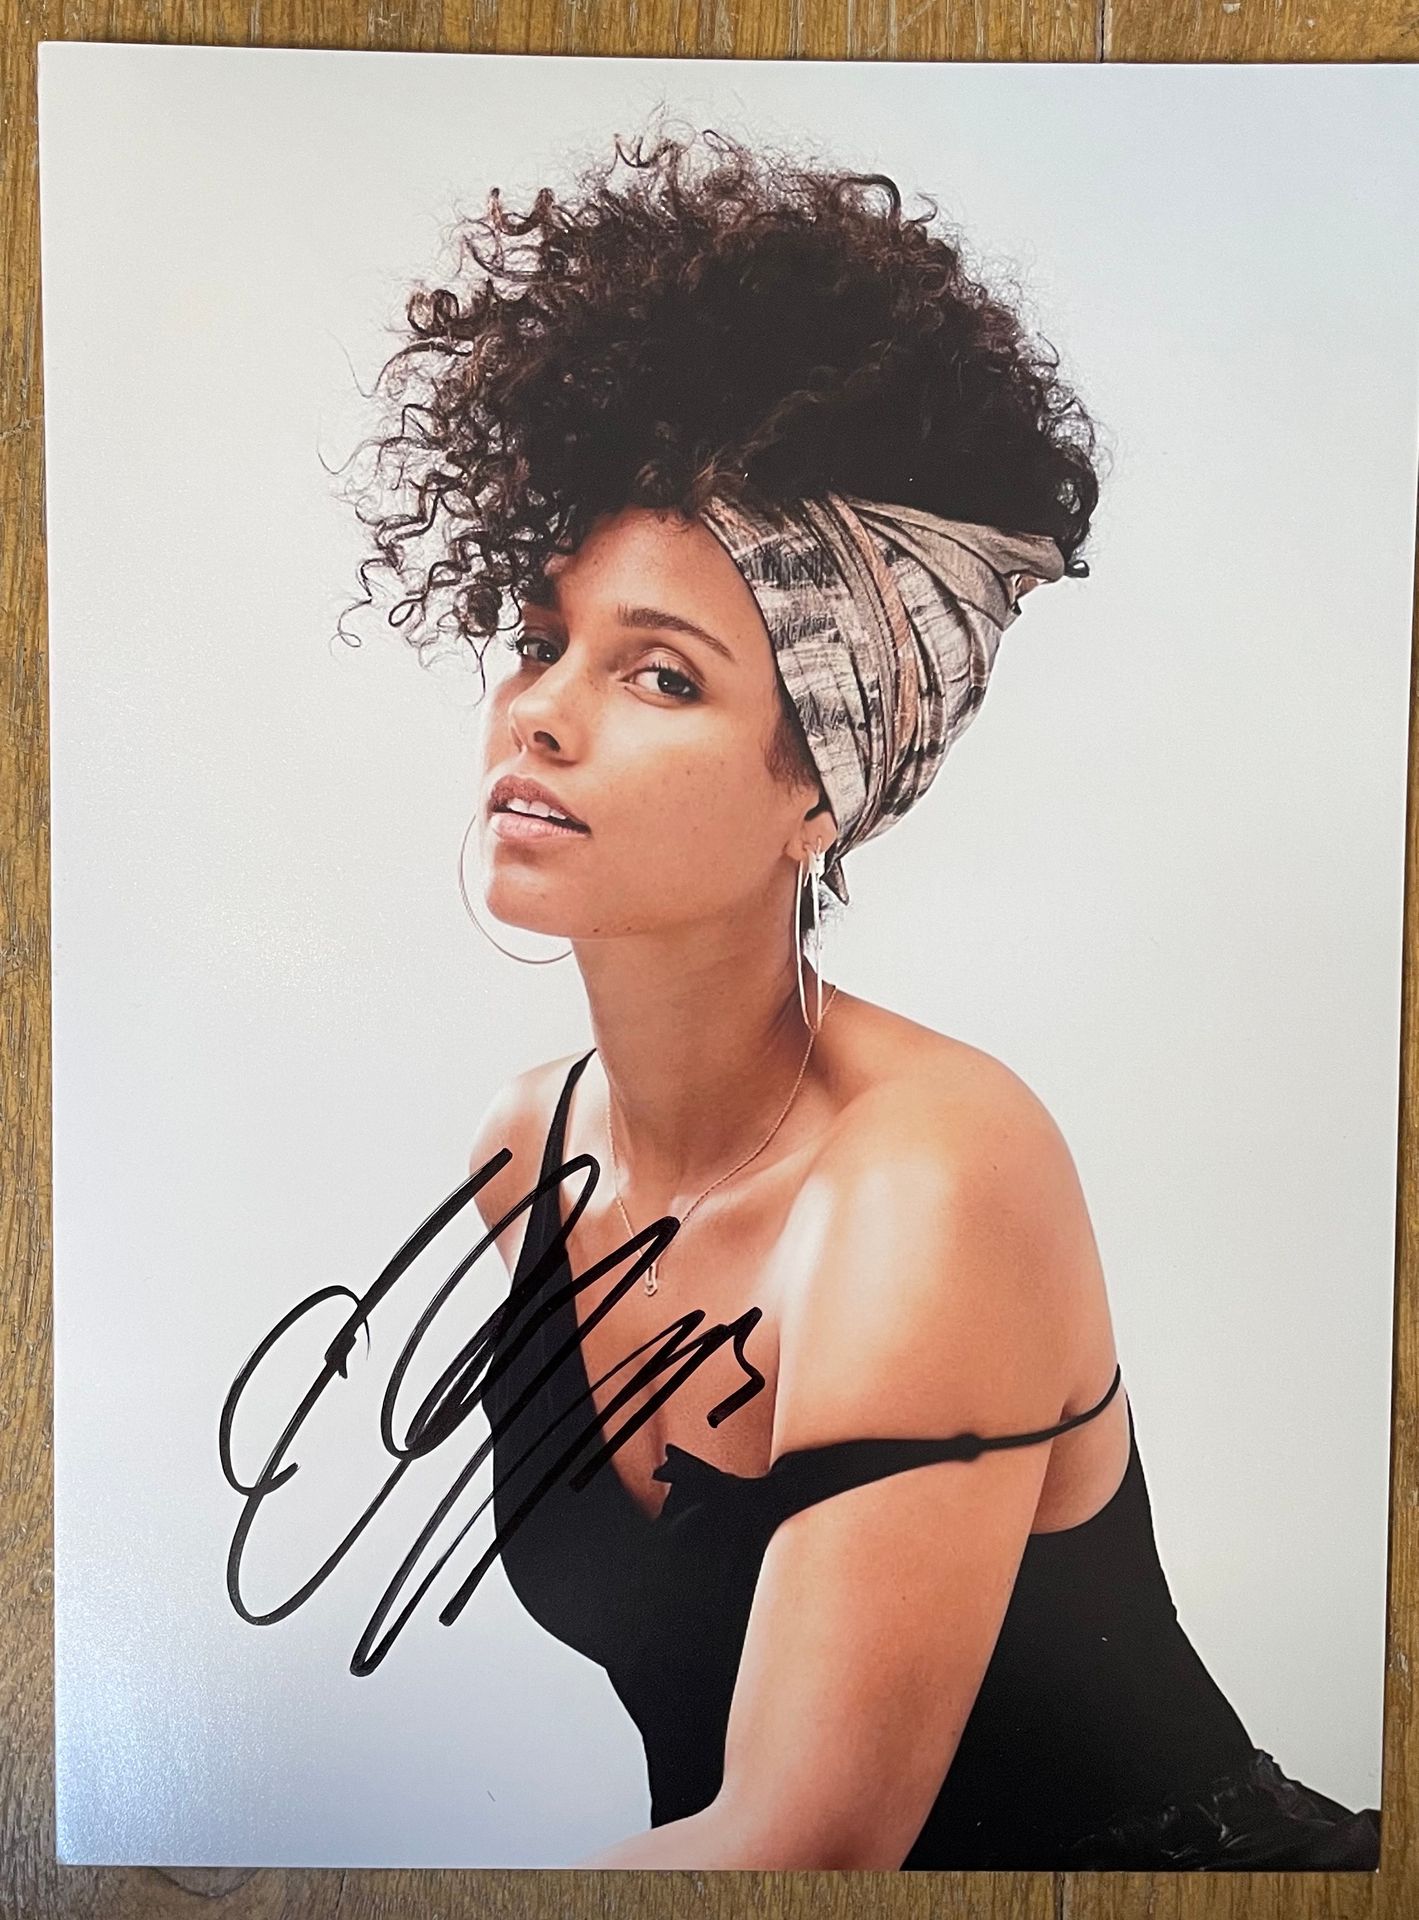 R&B/Funk… Una foto - Alicia Keys
Firmata dall'artista
EX